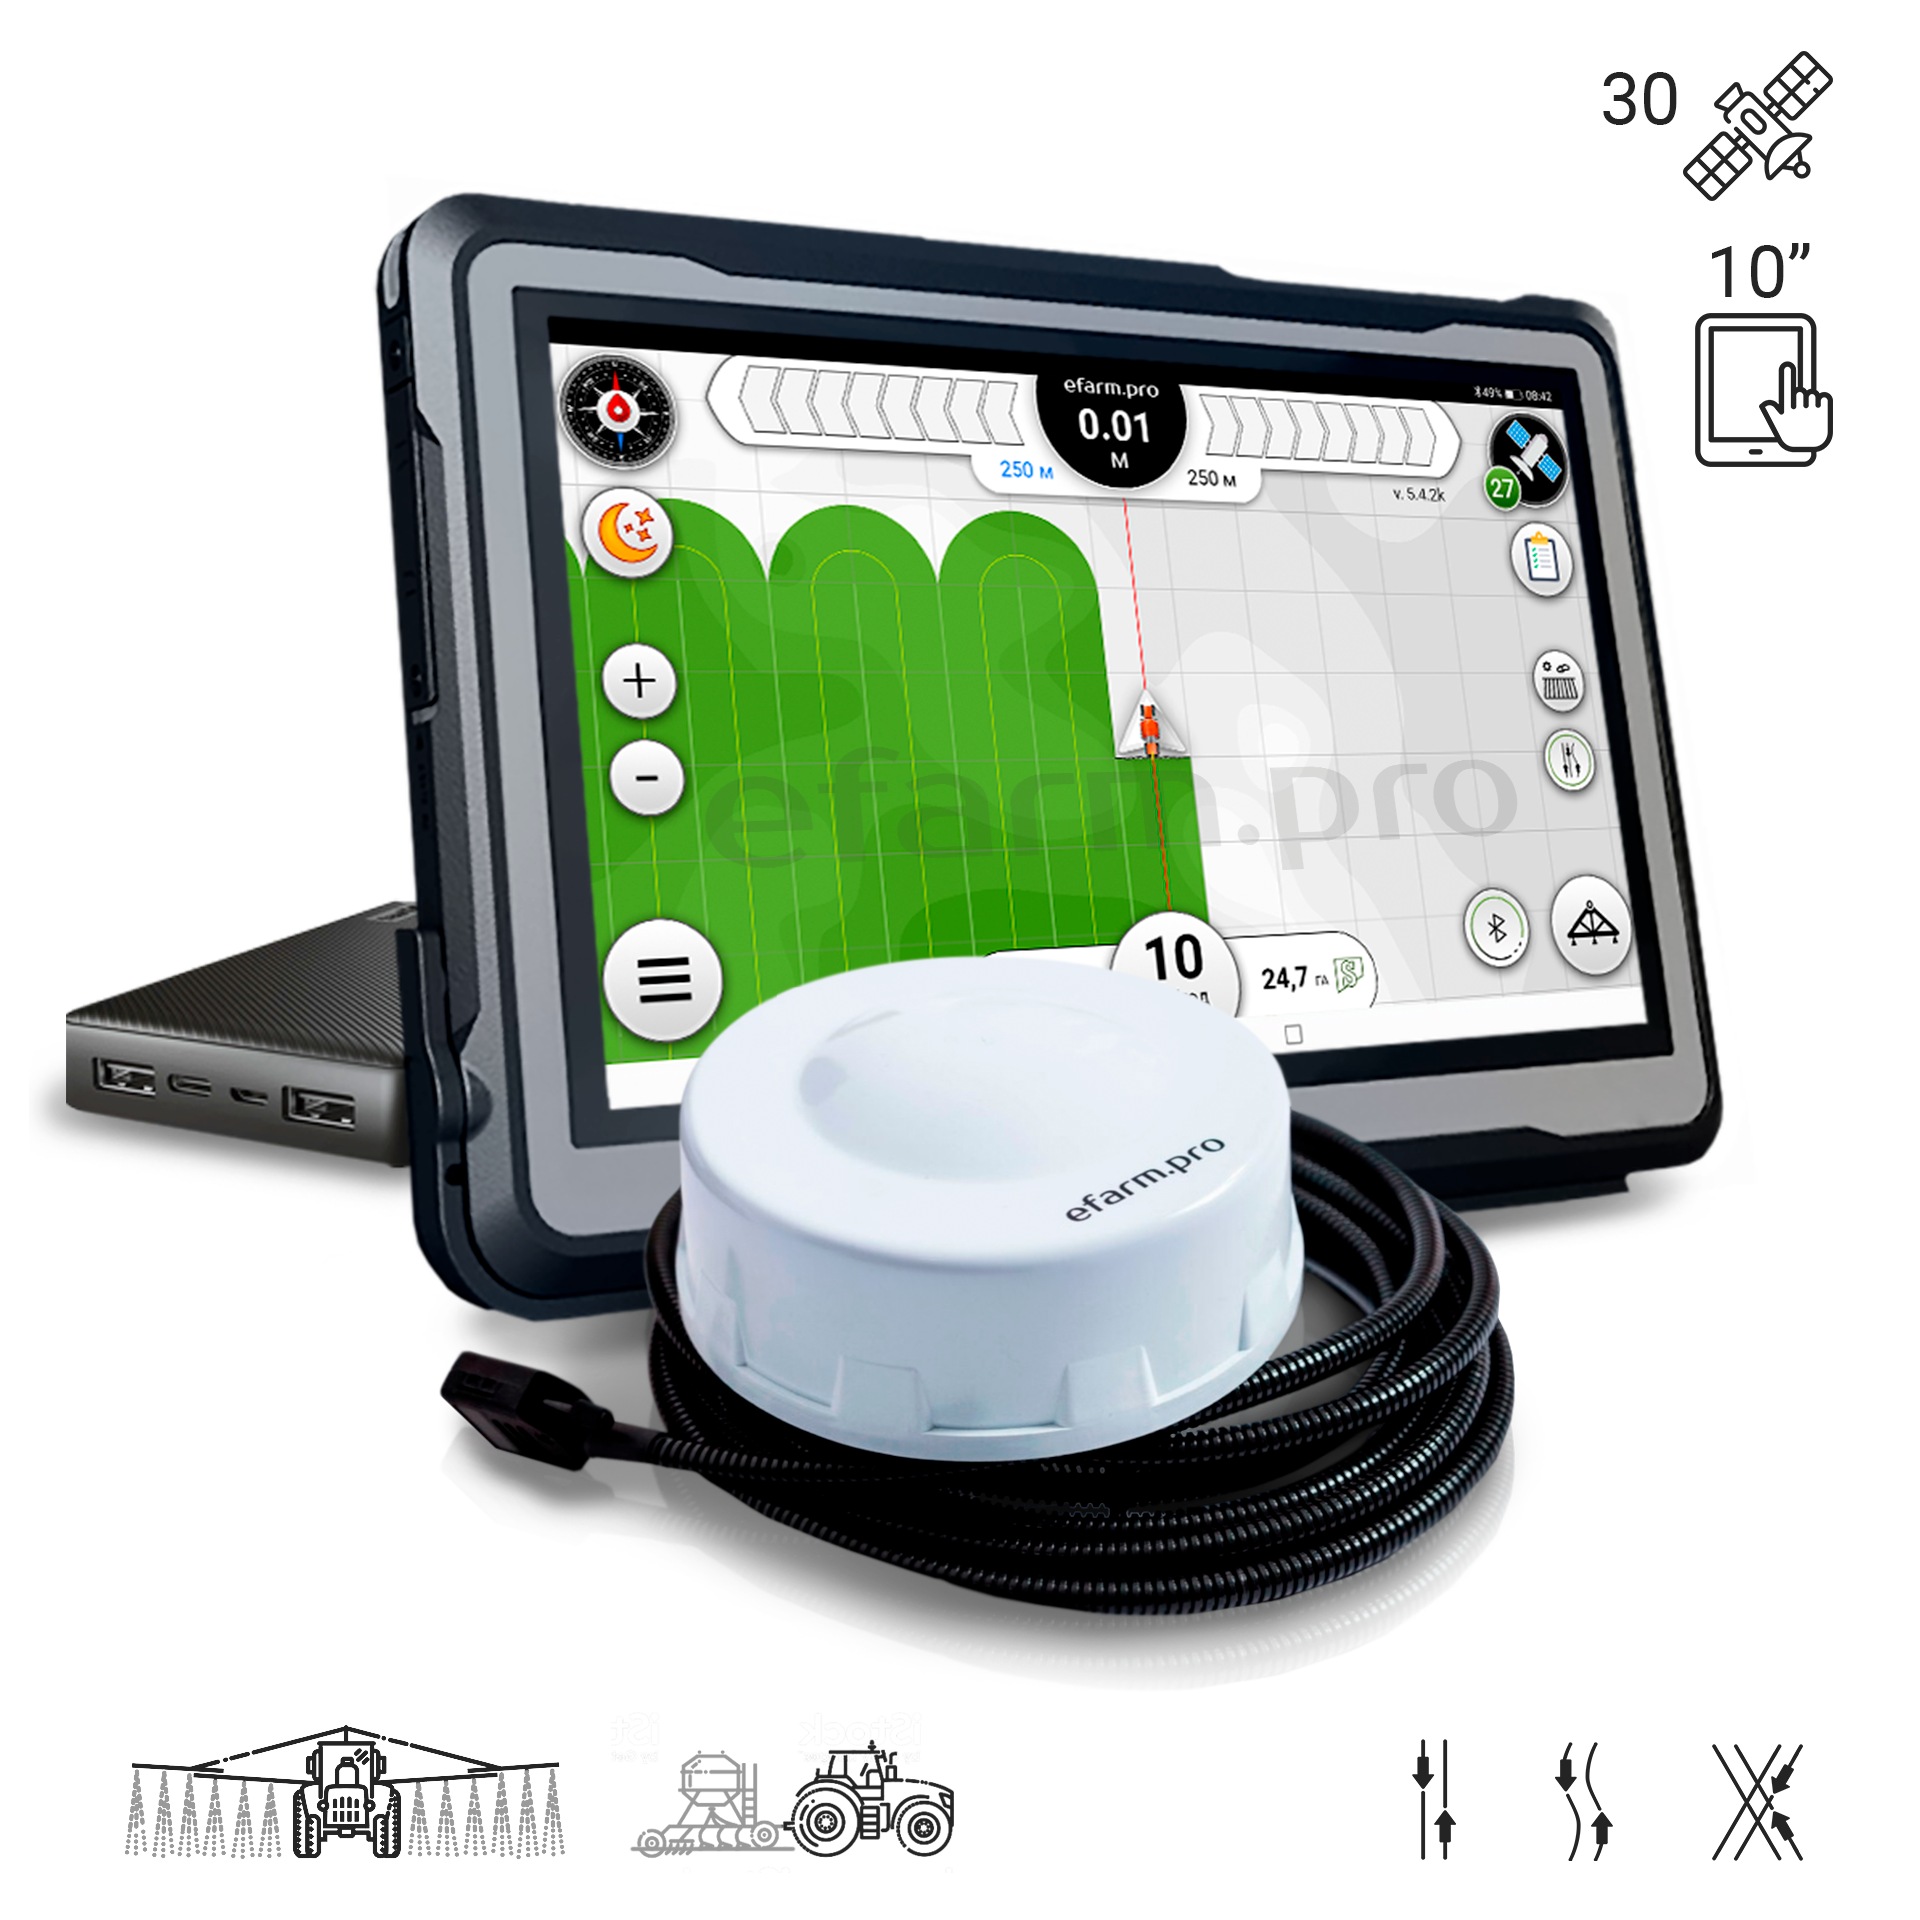 købmand Helt tør Aftensmad GPS Agro navigator efarm.pro, Display 10”